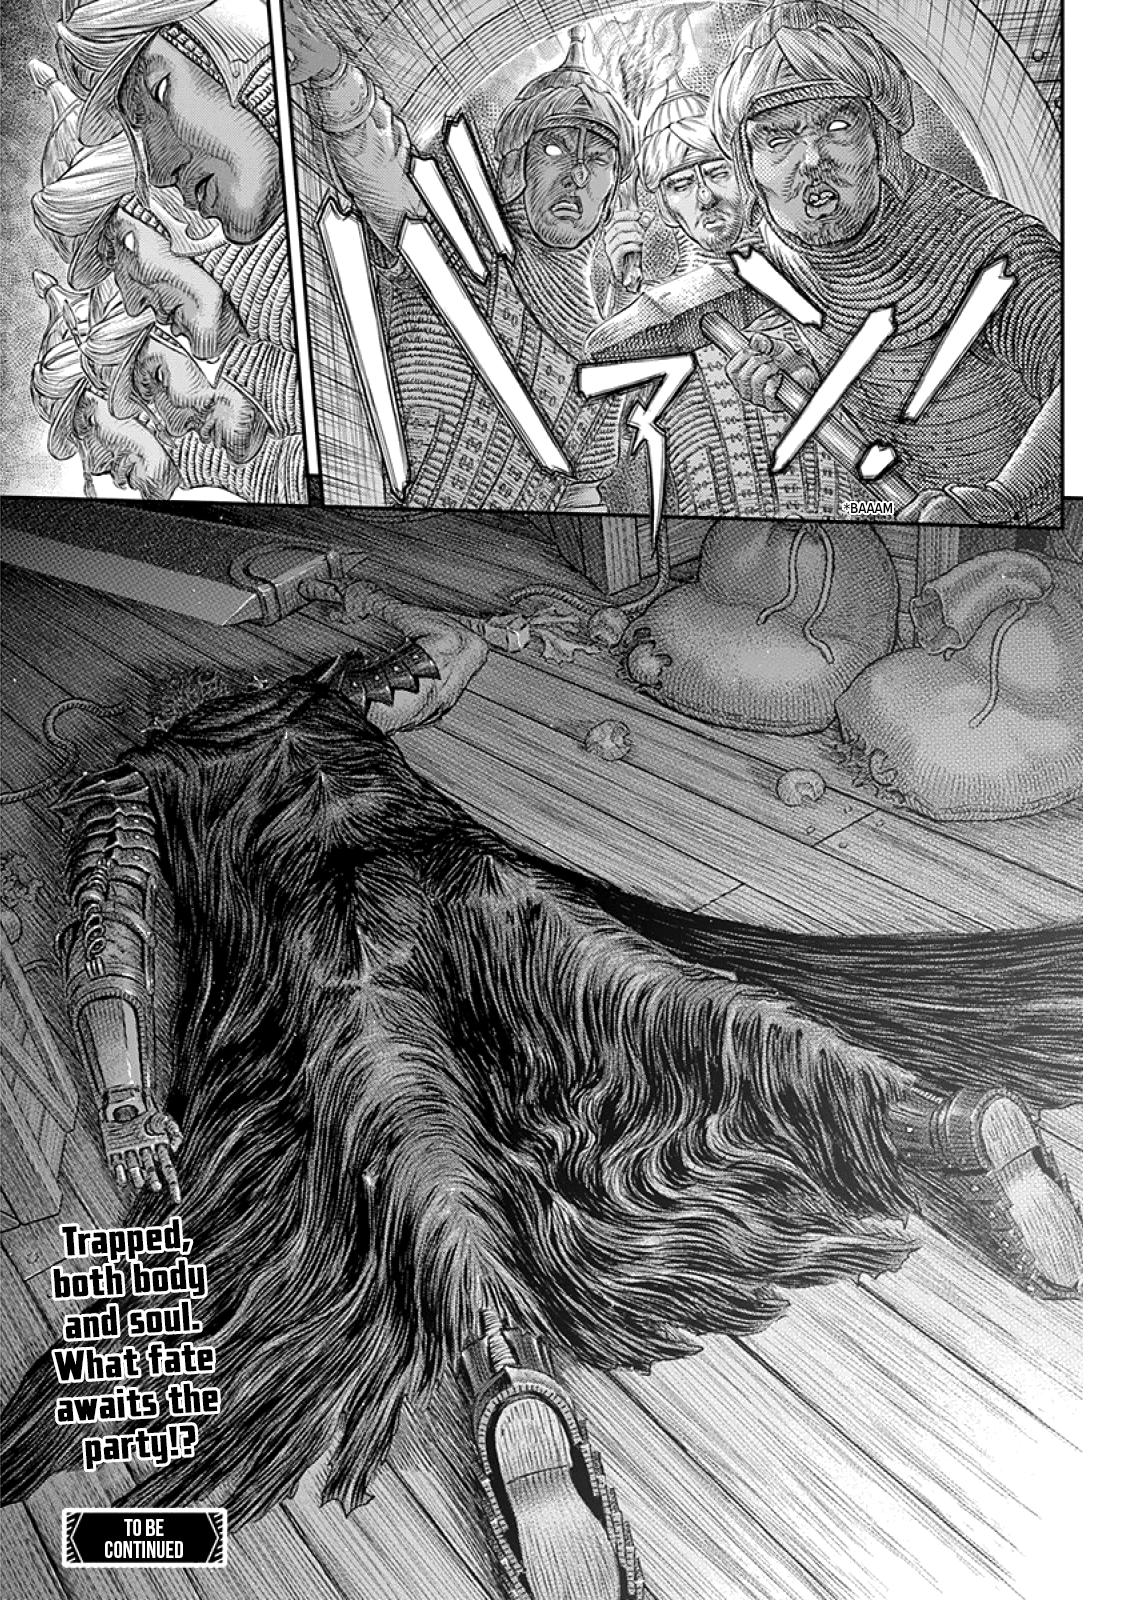 Berserk Manga Chapter 373 image 21